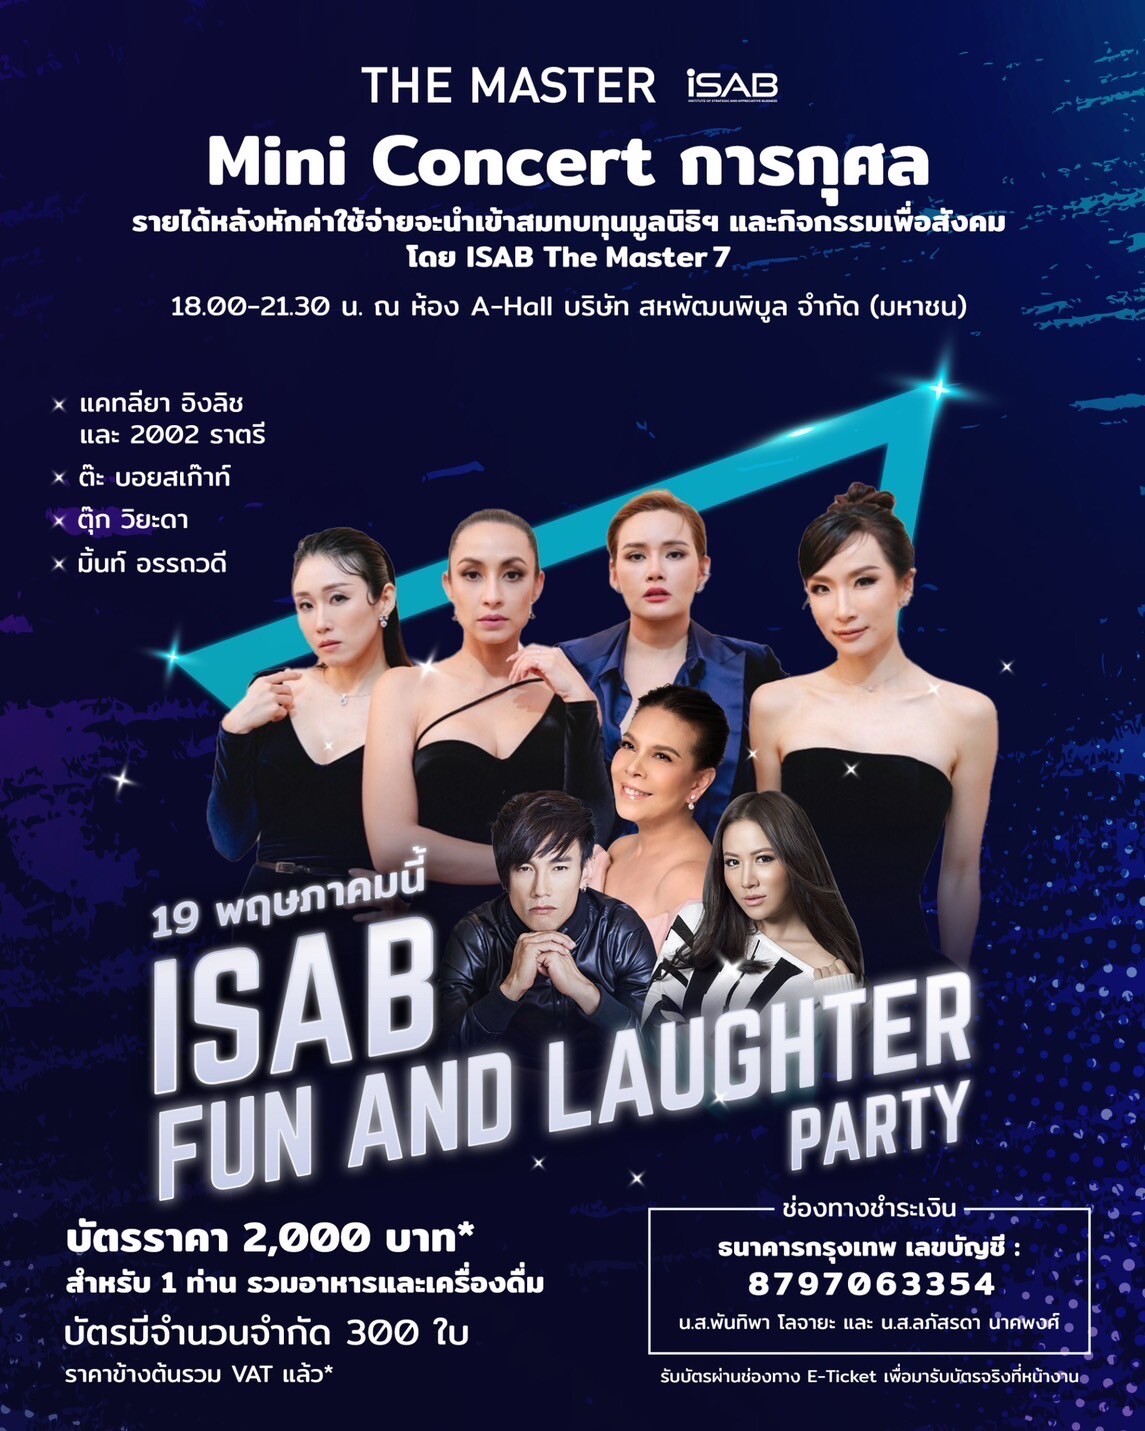 สถาบัน i-SAB โดย The Master 7 สหพัฒนพิบูล จัดมินิคอนเสิร์ตการกุศล ครั้งแรก "1st Concert i-SAB Fun and laughter Party" ศุกร์ที่19 พฤษภาคมนี้